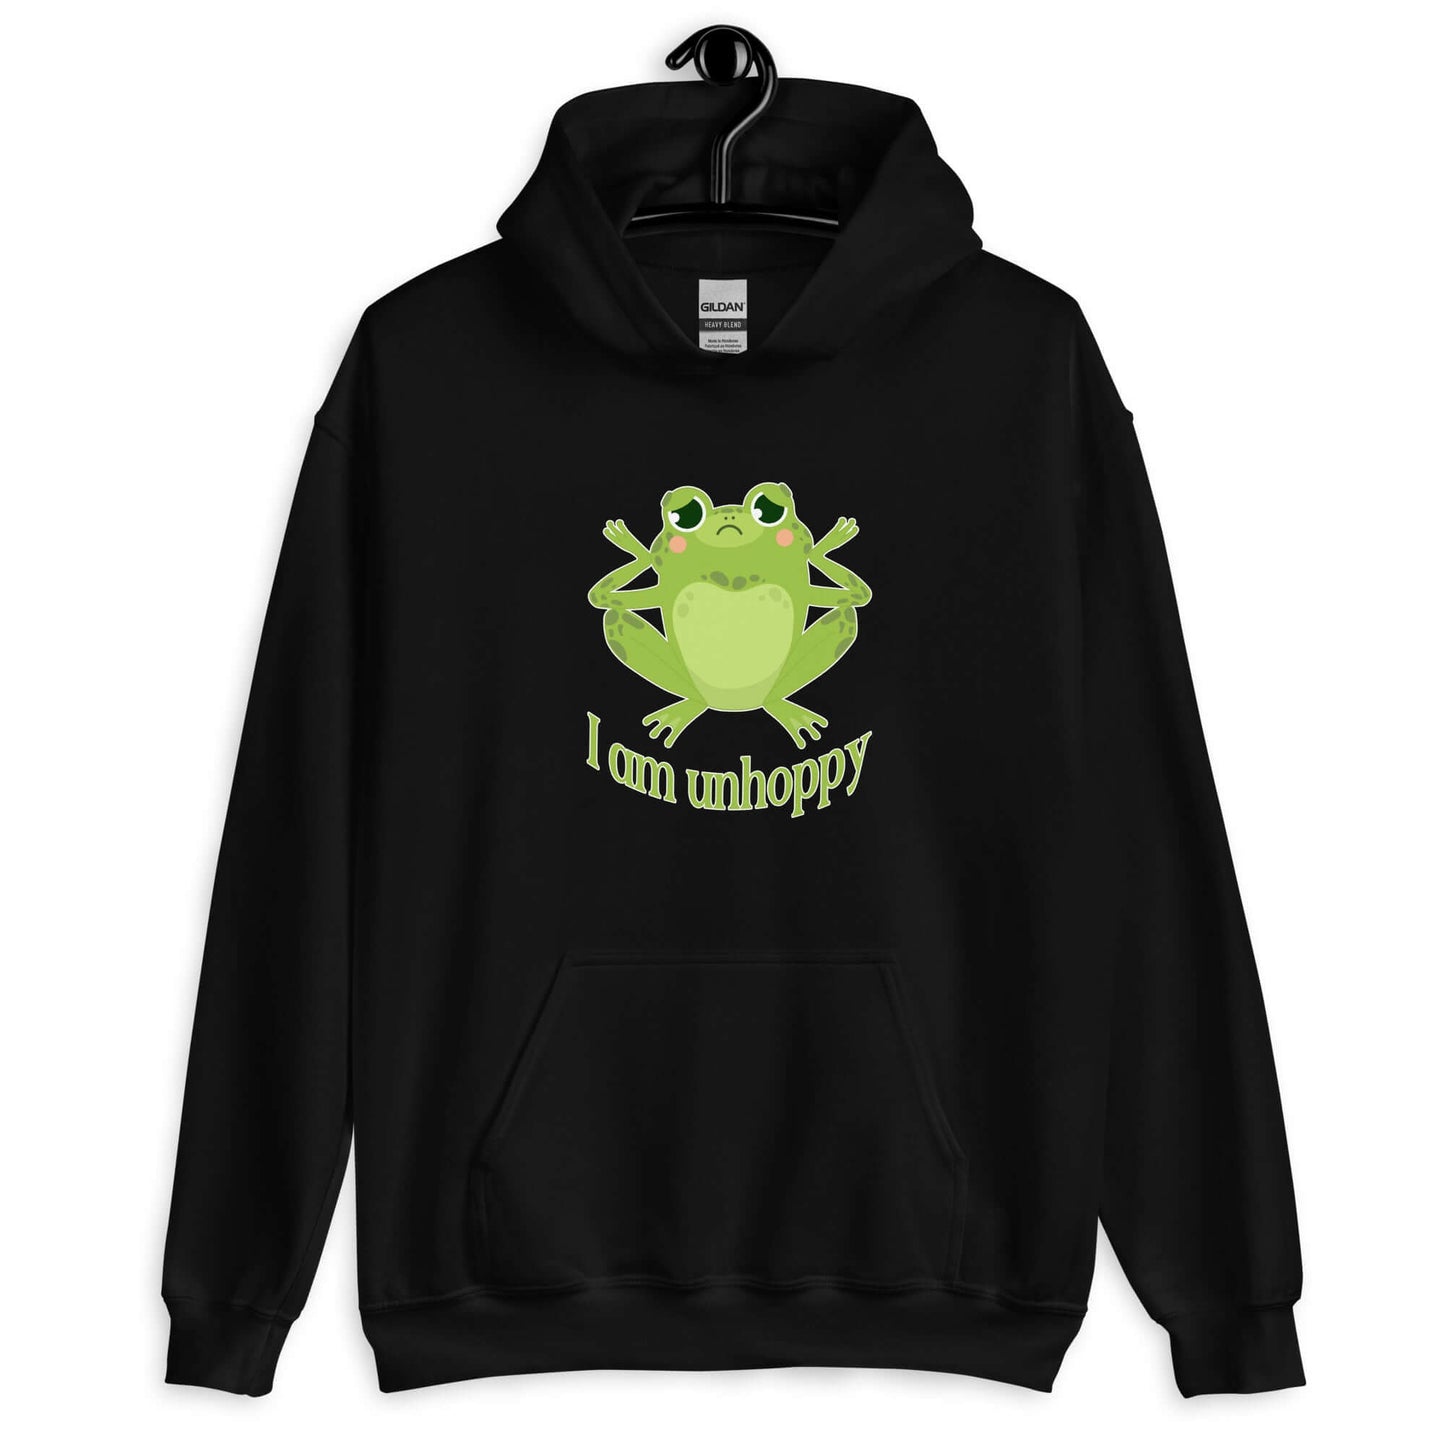 Unhappy frog hoodie. I am unhoppy pun hooded sweatshirt